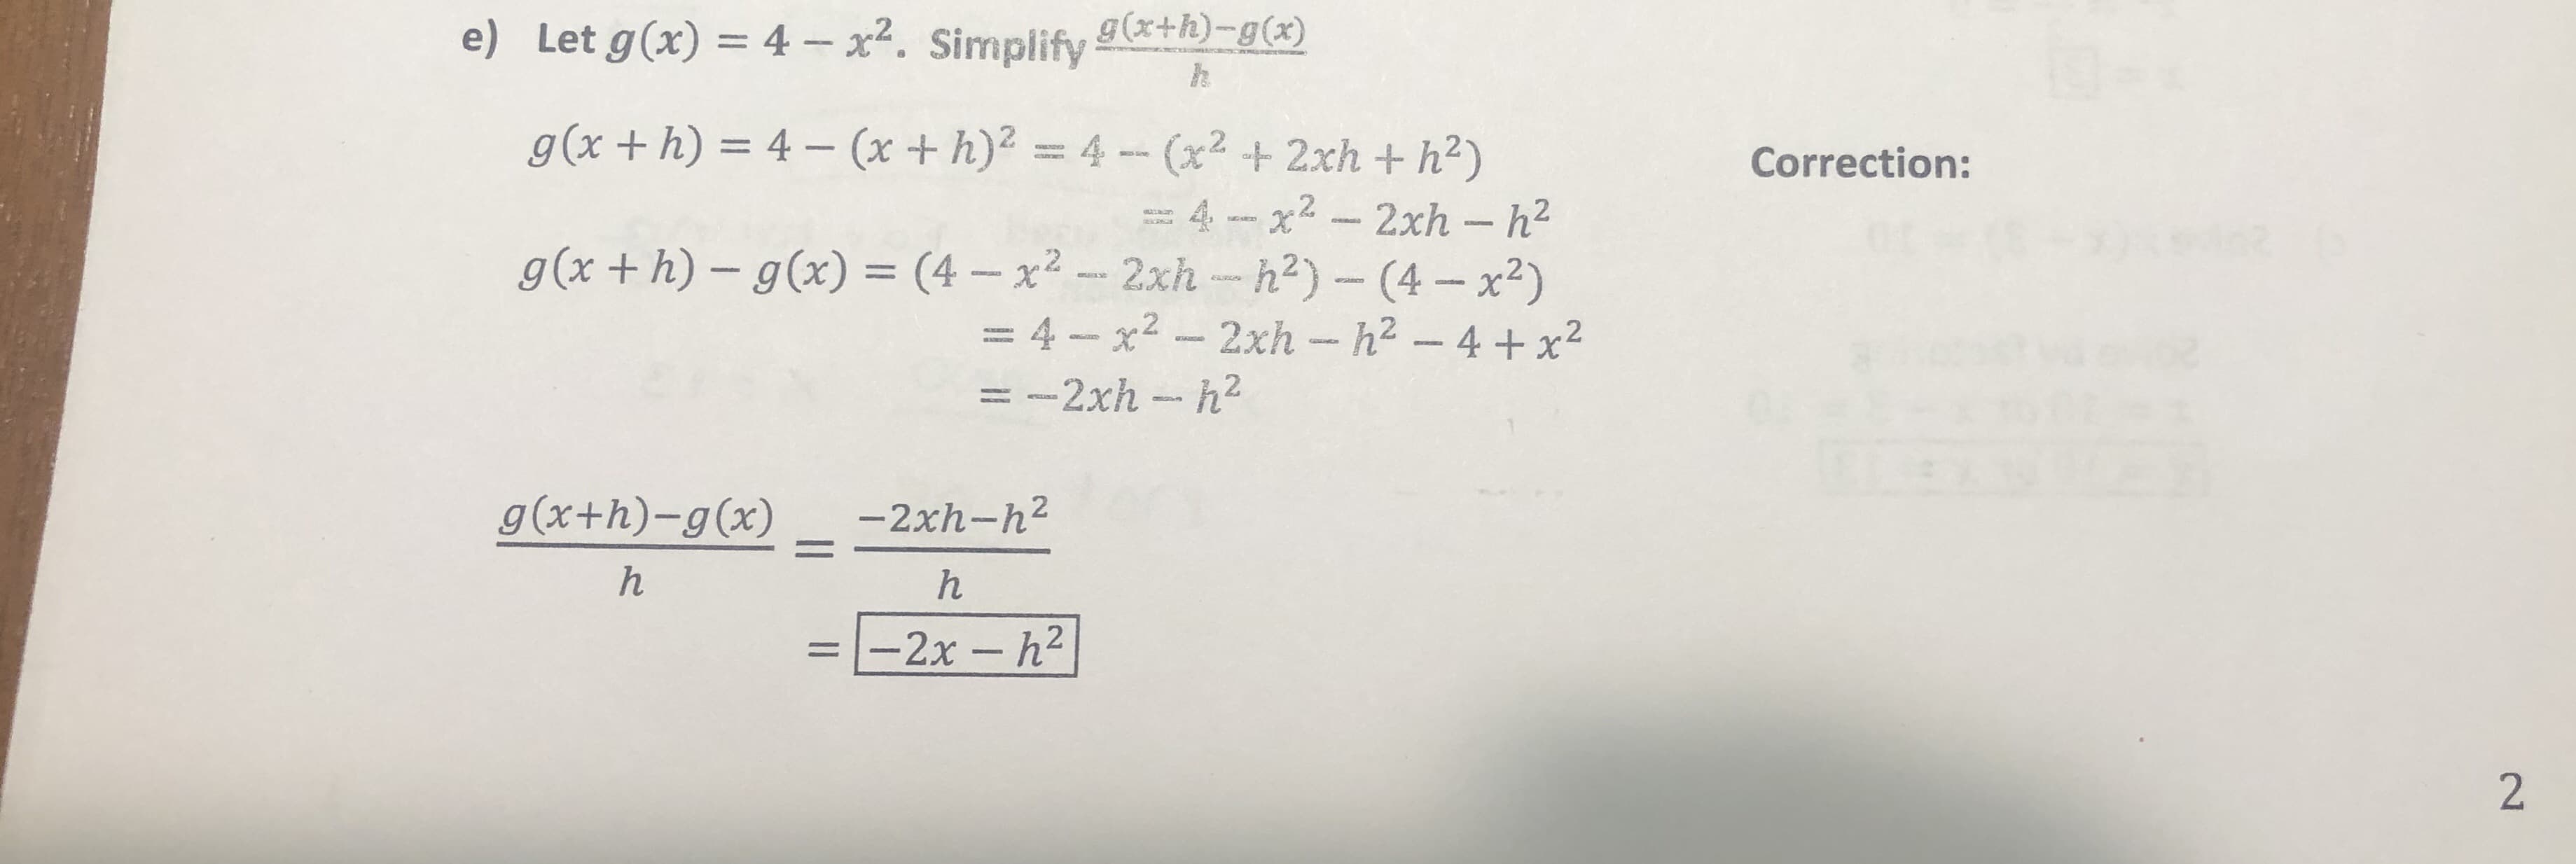 g(x+h)-g(x)
e) Let g(x) 4 -x. Simplify
g (x+h)
4-(x +h)2 4-(x2 + 2xh + h2)
Correction:
= 4 - x2 - 2xh - h2
- 2xh -h2) - (4-x2)
=4-x2 -2xh - h2 - 4 + x2
62
g(x + h) - g(x) = (4 - x2
L
= -2xh - h2
g (x+h)-g(x)
-2xh-h2
-2x- h2
2
